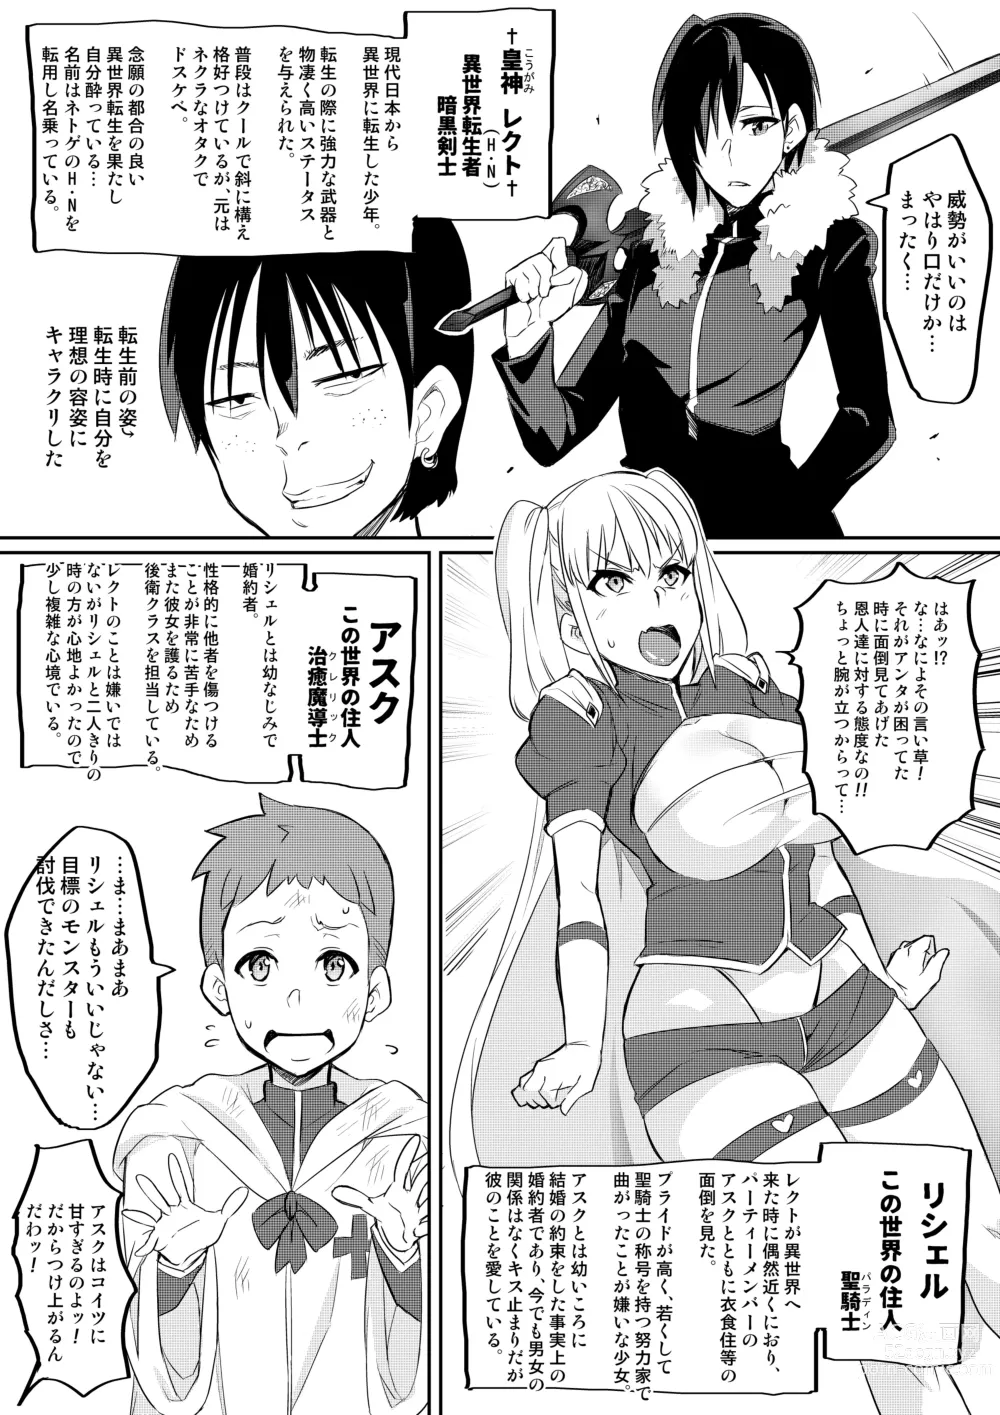 Page 4 of doujinshi Kimi ga Kaeranai Yoru Dokoka de Midara ni Buta ga Naku ~Otameshi de Kaitemita-ban~